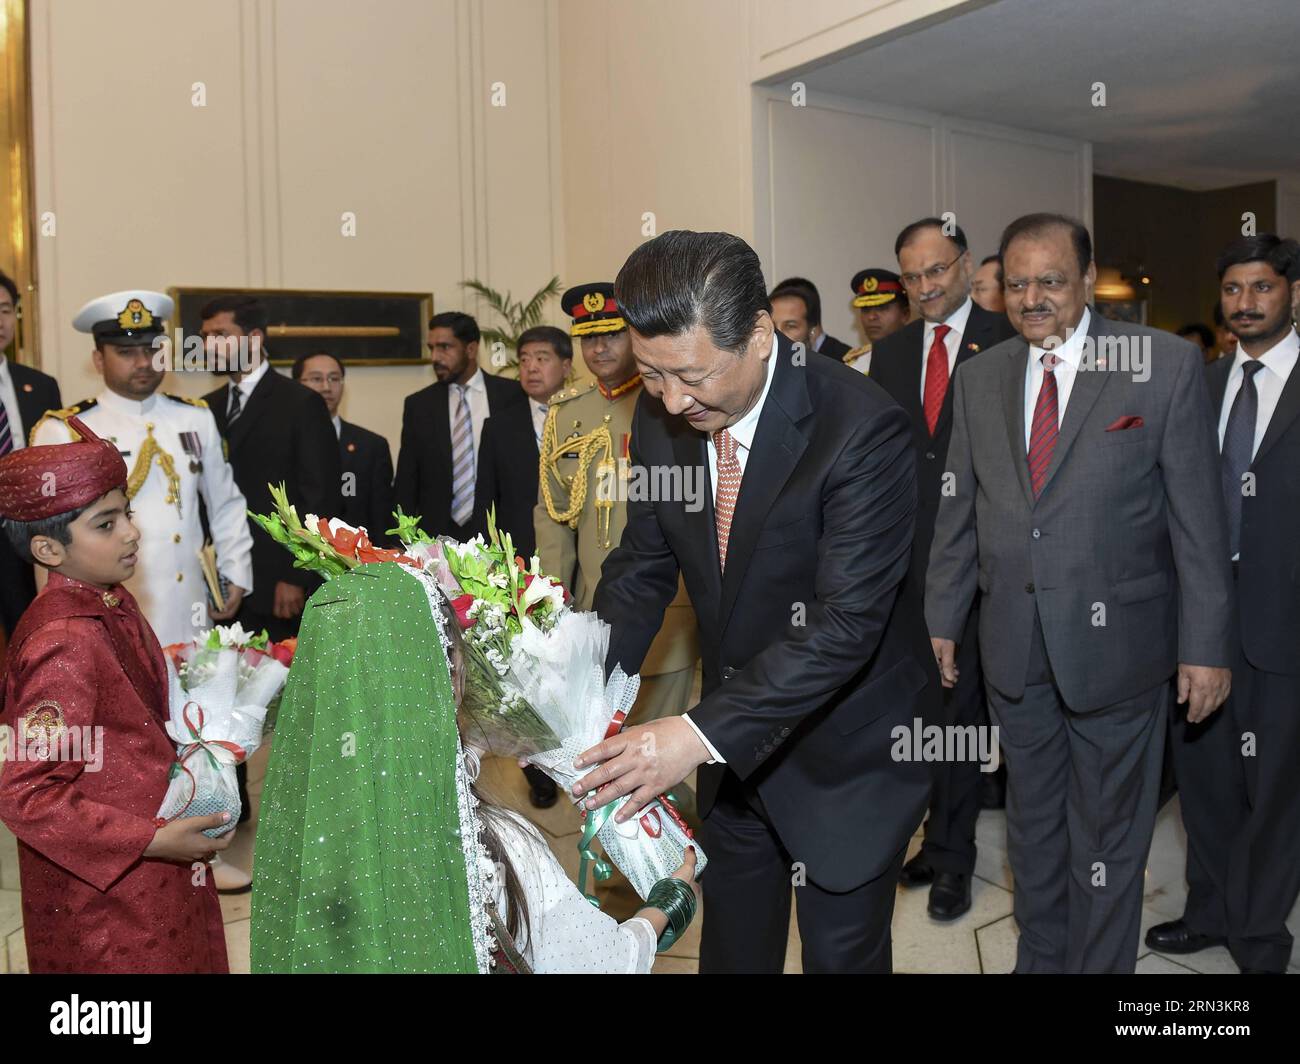 (150421) -- ISLAMABAD, 21 de abril de 2015 -- El presidente chino Xi Jinping recibe flores de un niño antes de reunirse con el presidente paquistaní Mamnoon Hussain en Islamabad, Pakistán, 21 de abril de 2015. ) (ZHS) PAKISTÁN-CHINA-XI JINPING-REUNIÓN LixXueren PUBLICATIONxNOTxINxCHN Islamabad ABRIL 21 2015 El presidente chino Xi Jinping recibe flores de un niño antes de reunirse con el presidente paquistaní Hussain en Islamabad PAKISTÁN ABRIL 21 2015 Foto de stock